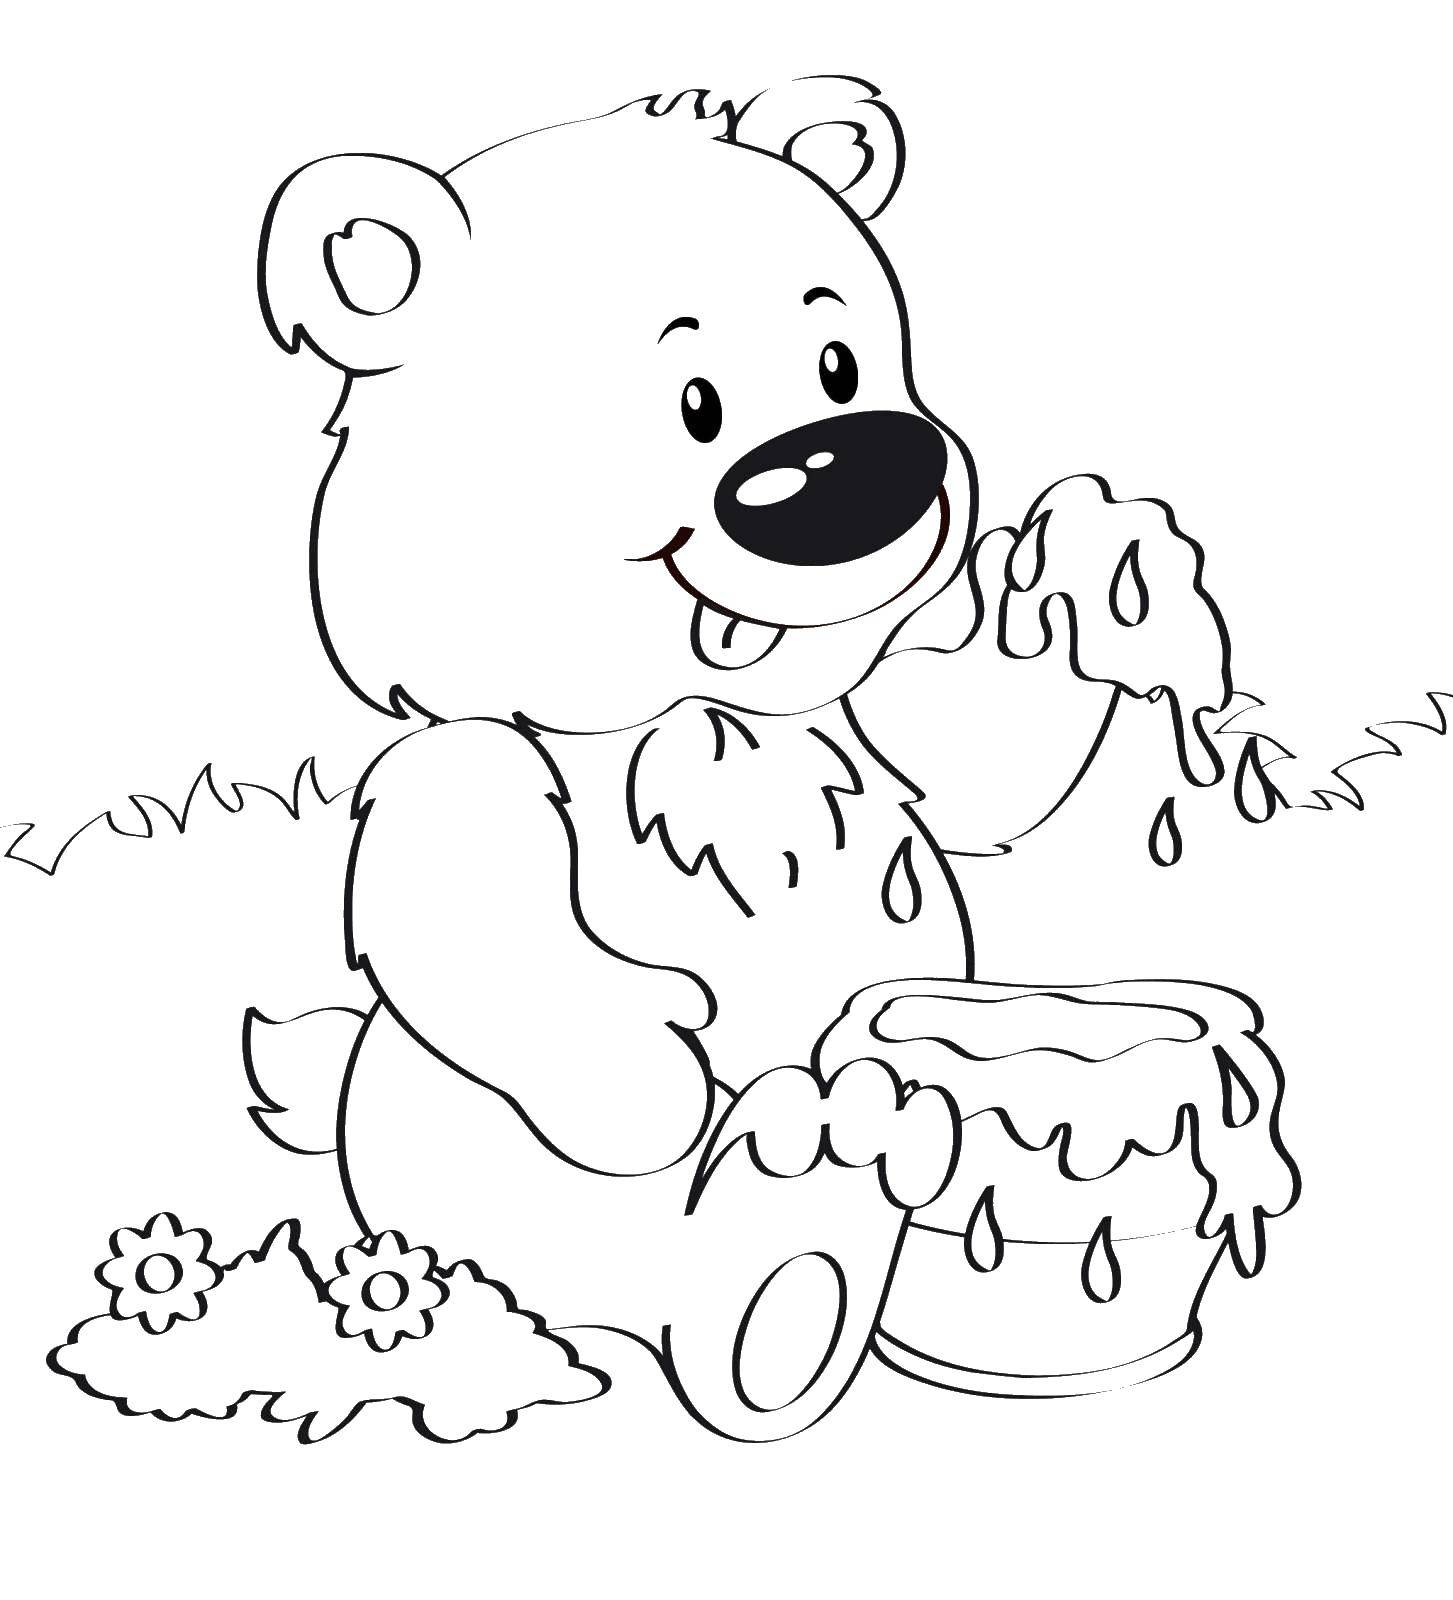 Раскраска медведя, пчел и котят для детей (мишка, выбор)